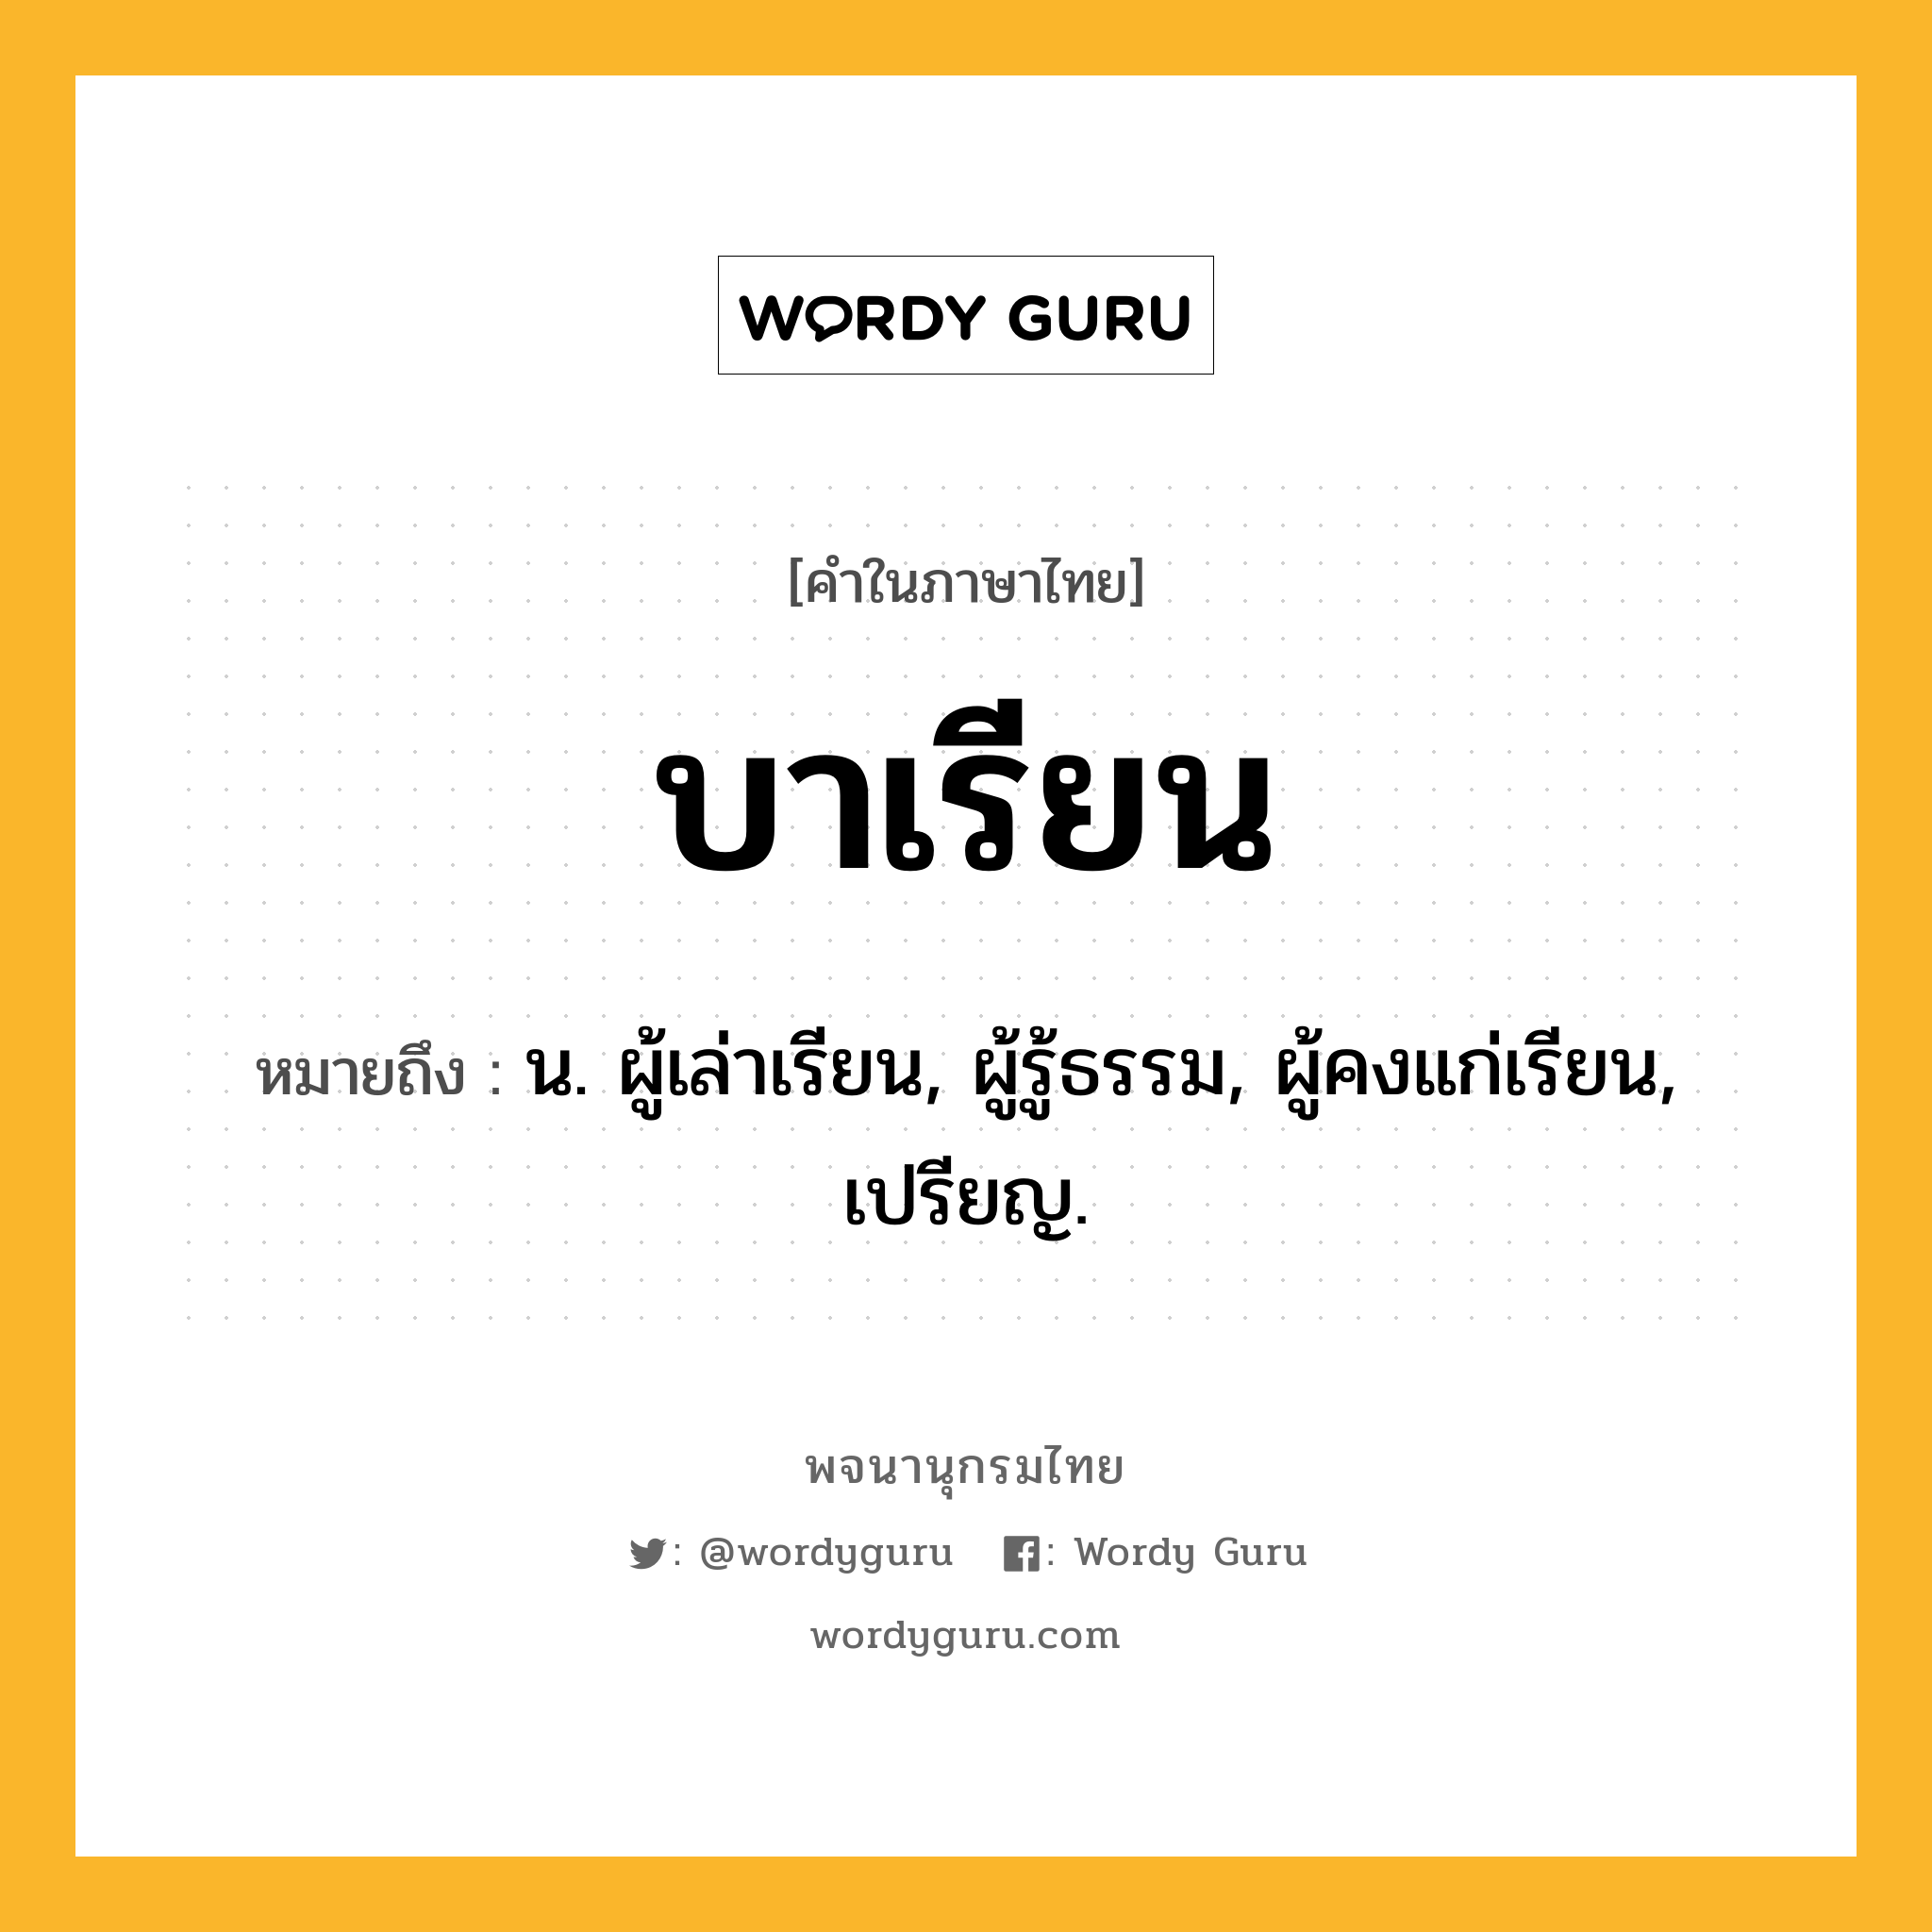 บาเรียน ความหมาย หมายถึงอะไร?, คำในภาษาไทย บาเรียน หมายถึง น. ผู้เล่าเรียน, ผู้รู้ธรรม, ผู้คงแก่เรียน, เปรียญ.